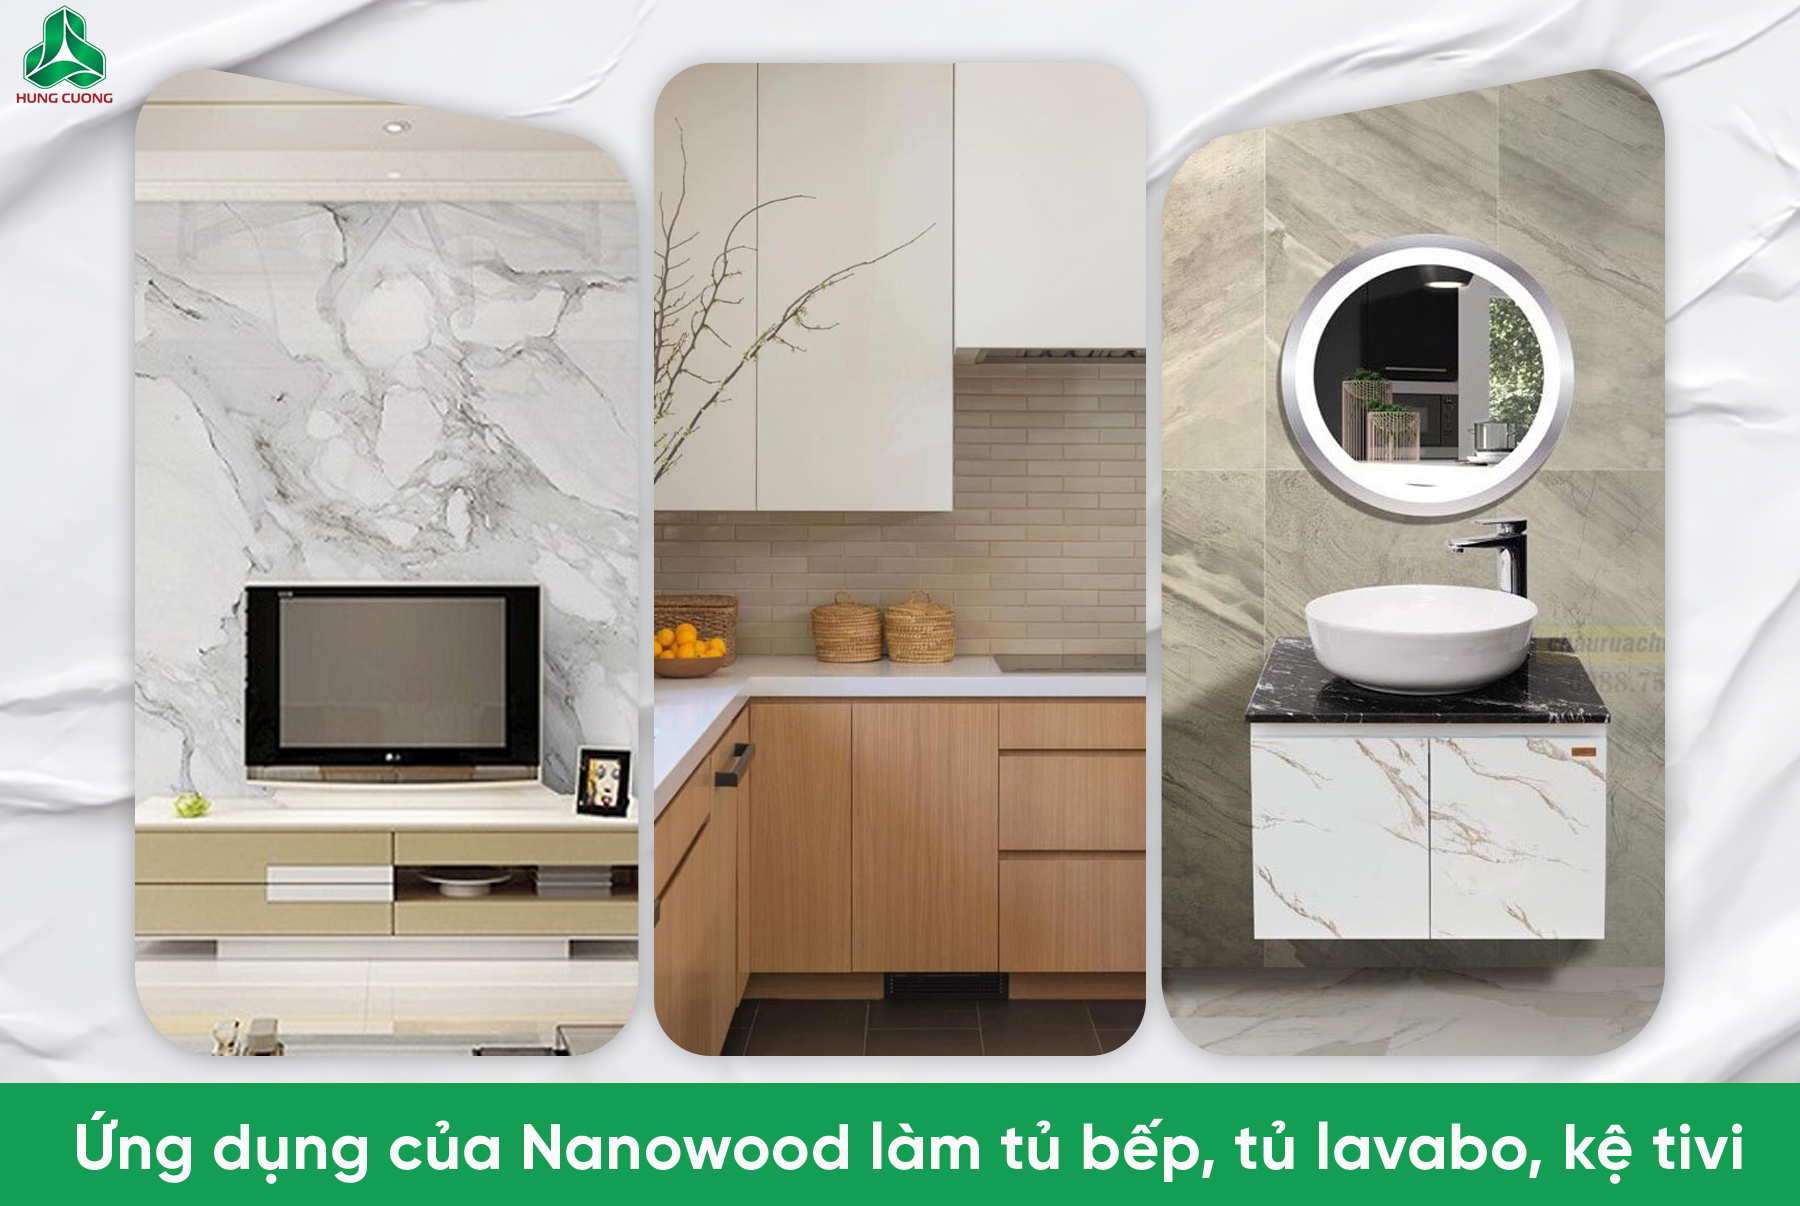 Ứng dụng của Nanowood làm tủ bếp, tủ lavabo, kệ tivi